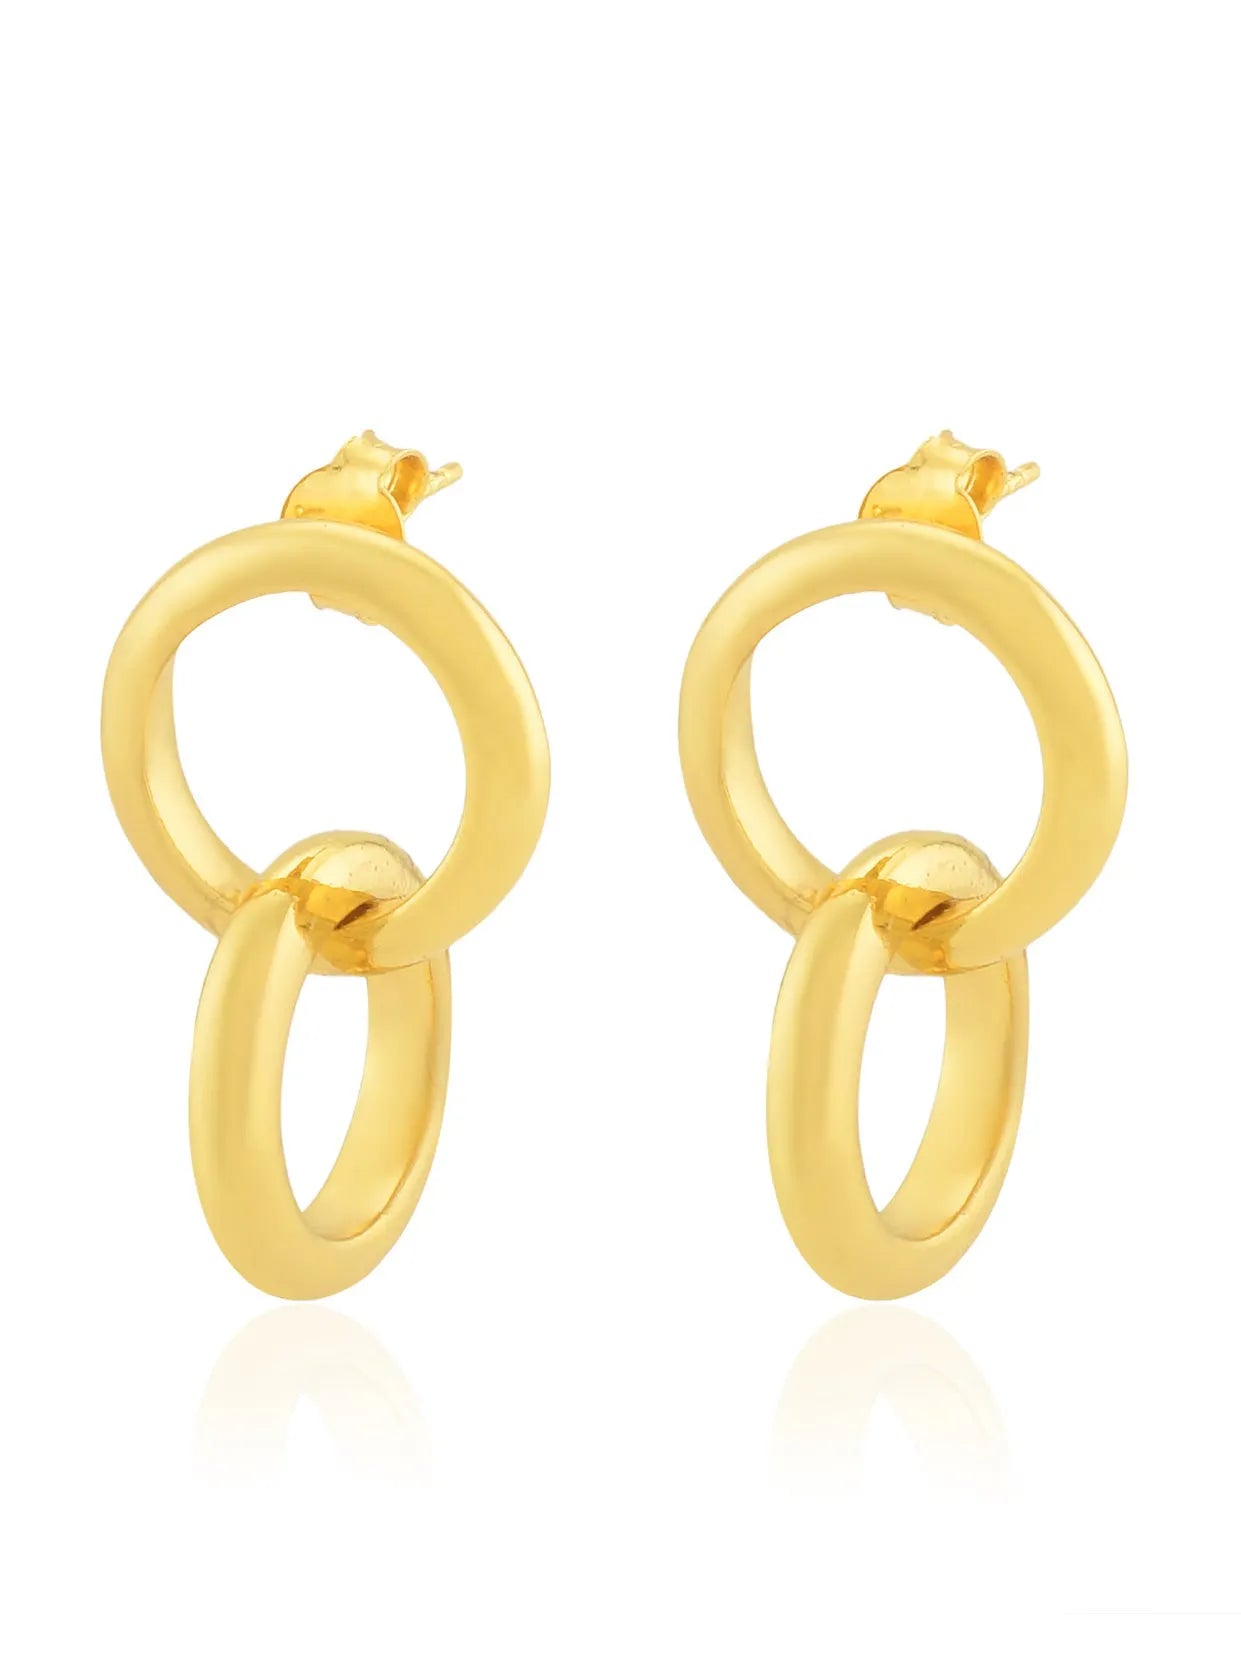 Shyla Celestine Earrings